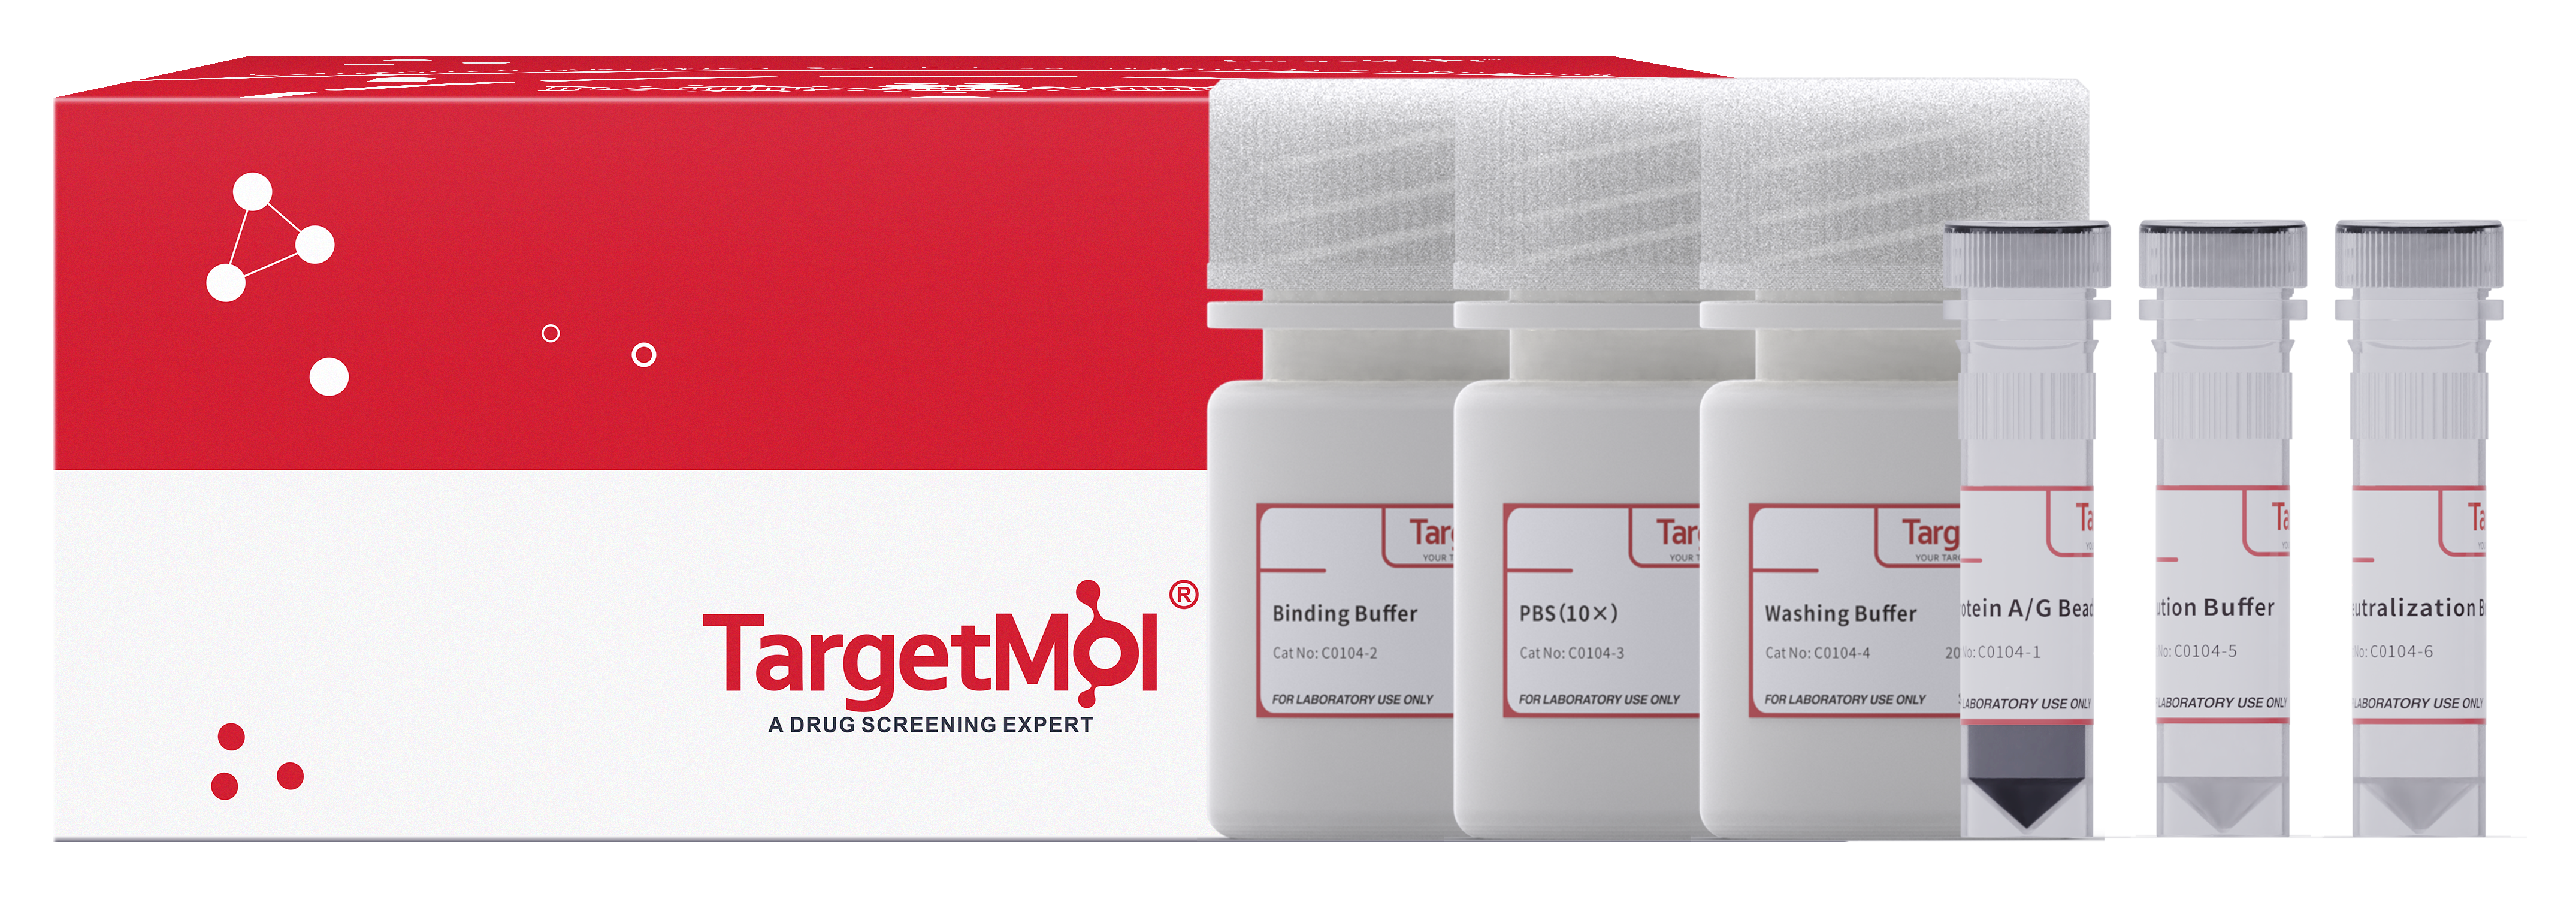 Protein A/G Immunoprecipitation Kit